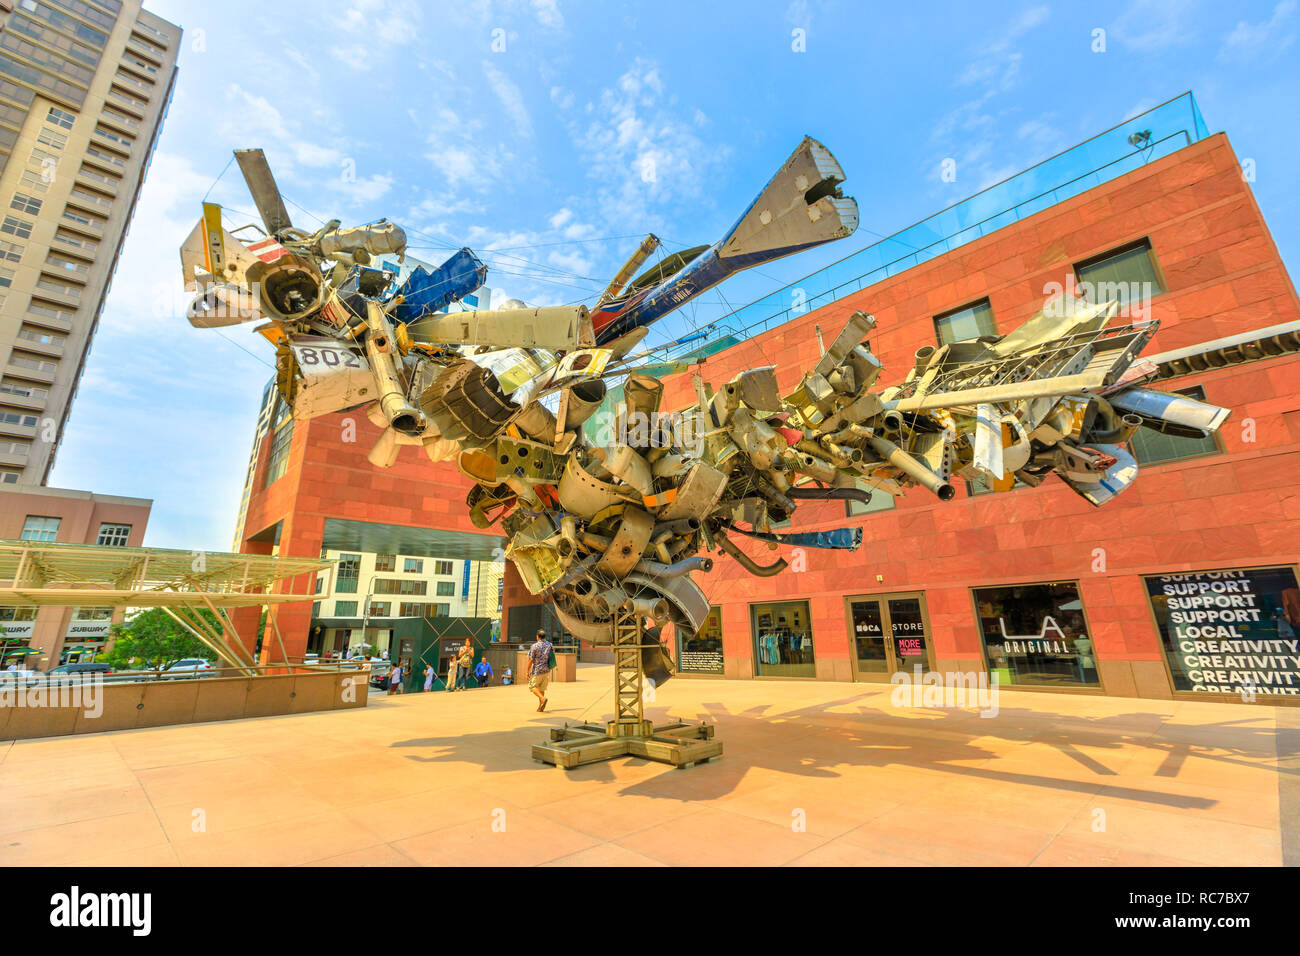 Los Angeles, Kalifornien, Vereinigte Staaten - 9. August 2018: moderne Skulptur vor dem Museum für Zeitgenössische Kunst, MOCA auf Grand Avenue in Downtown Los Angeles. Blauer Himmel an einem sonnigen Tag. Stockfoto